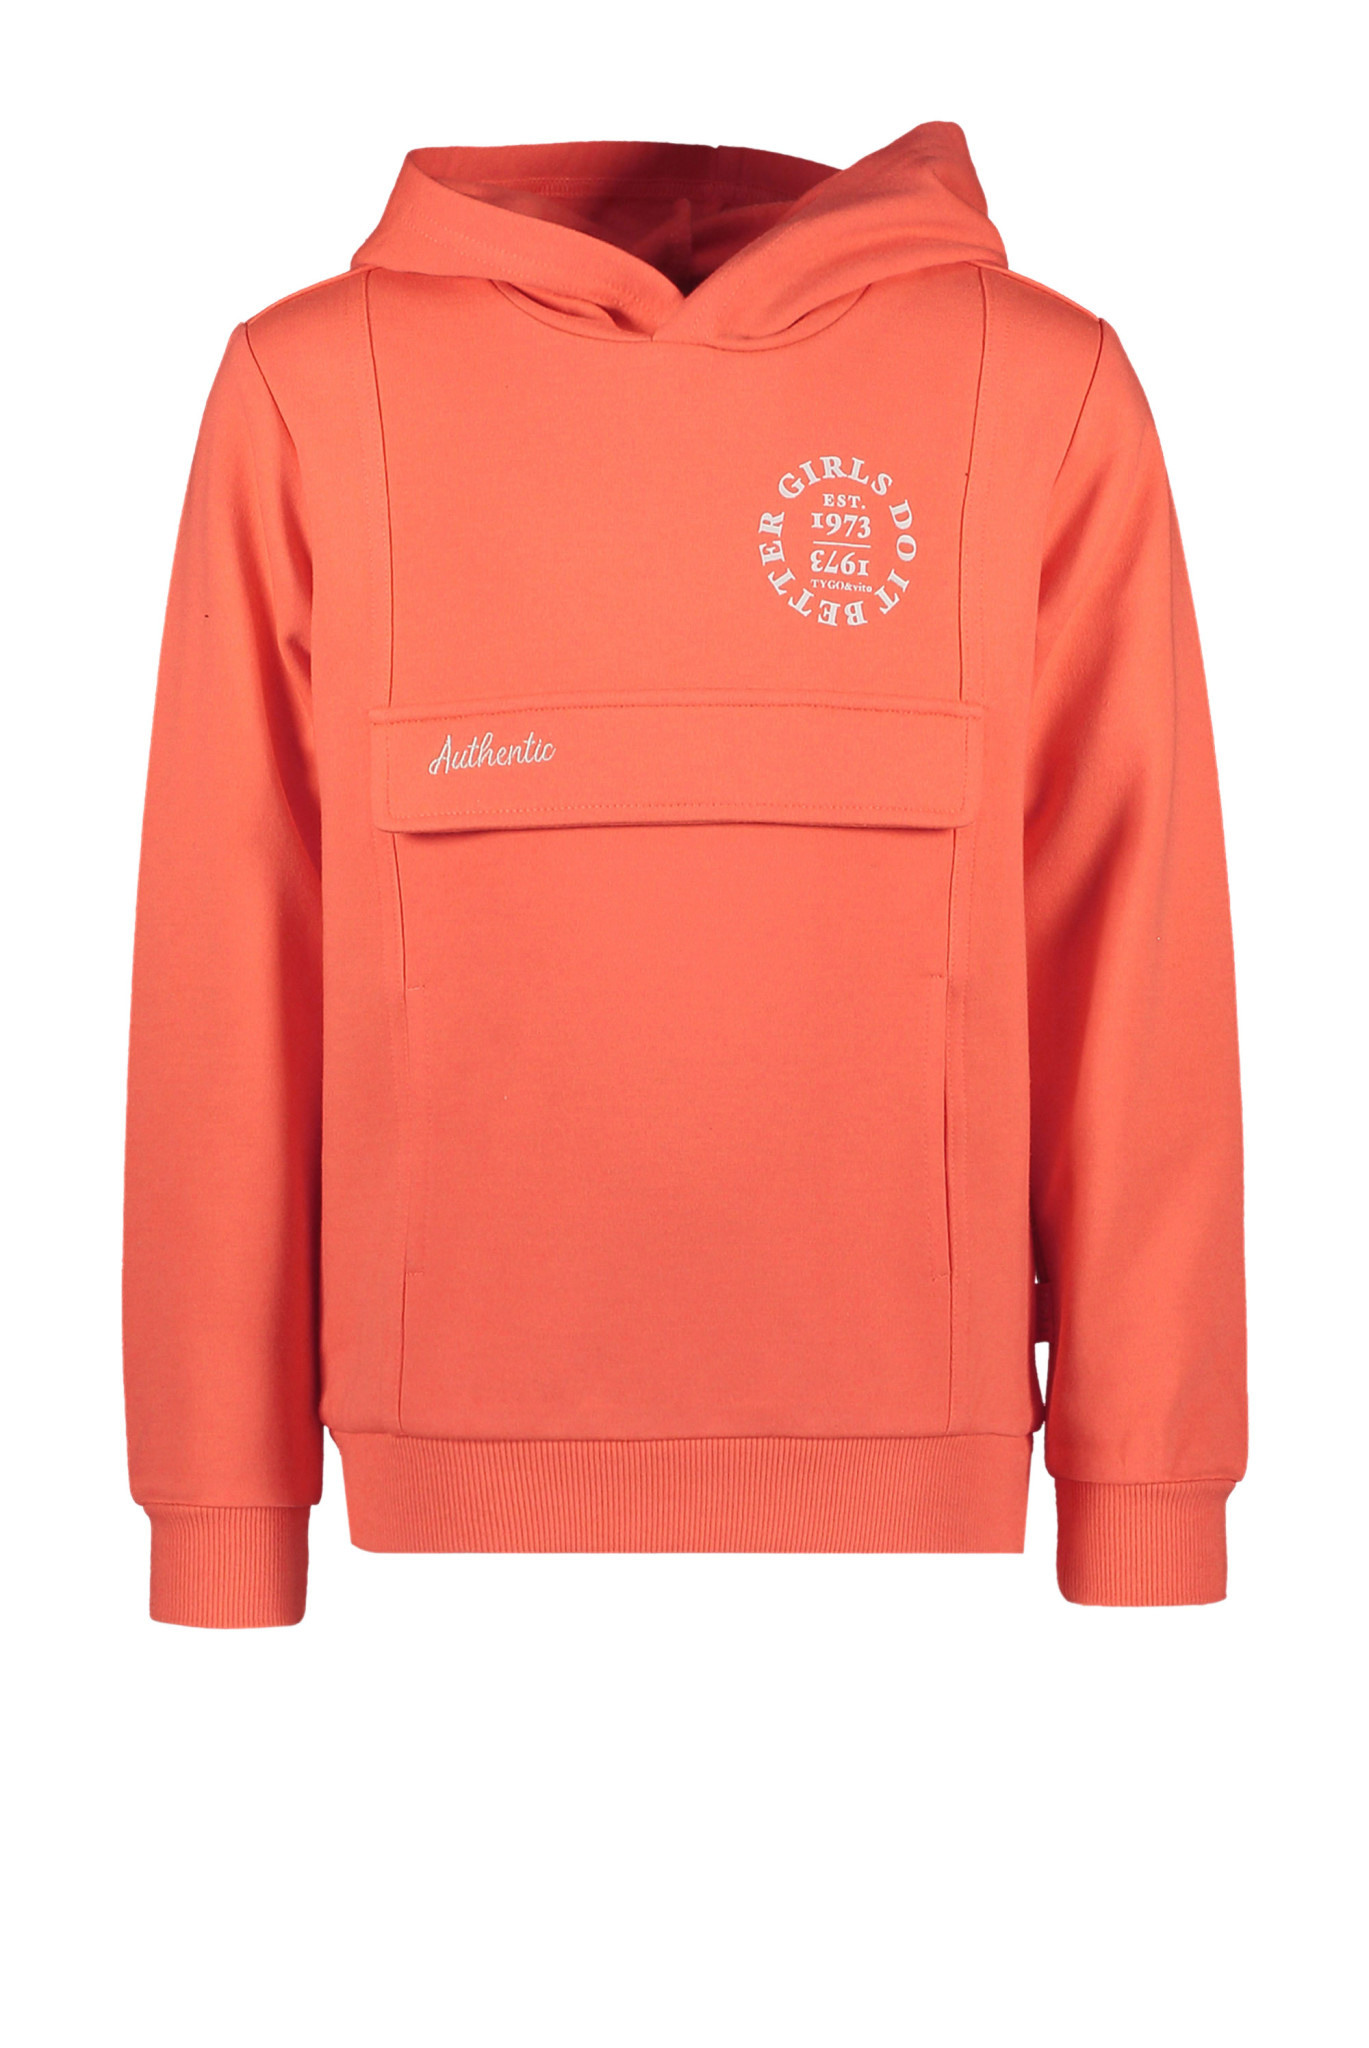 tygo & vito meisjes hoodie do it better fiery coral